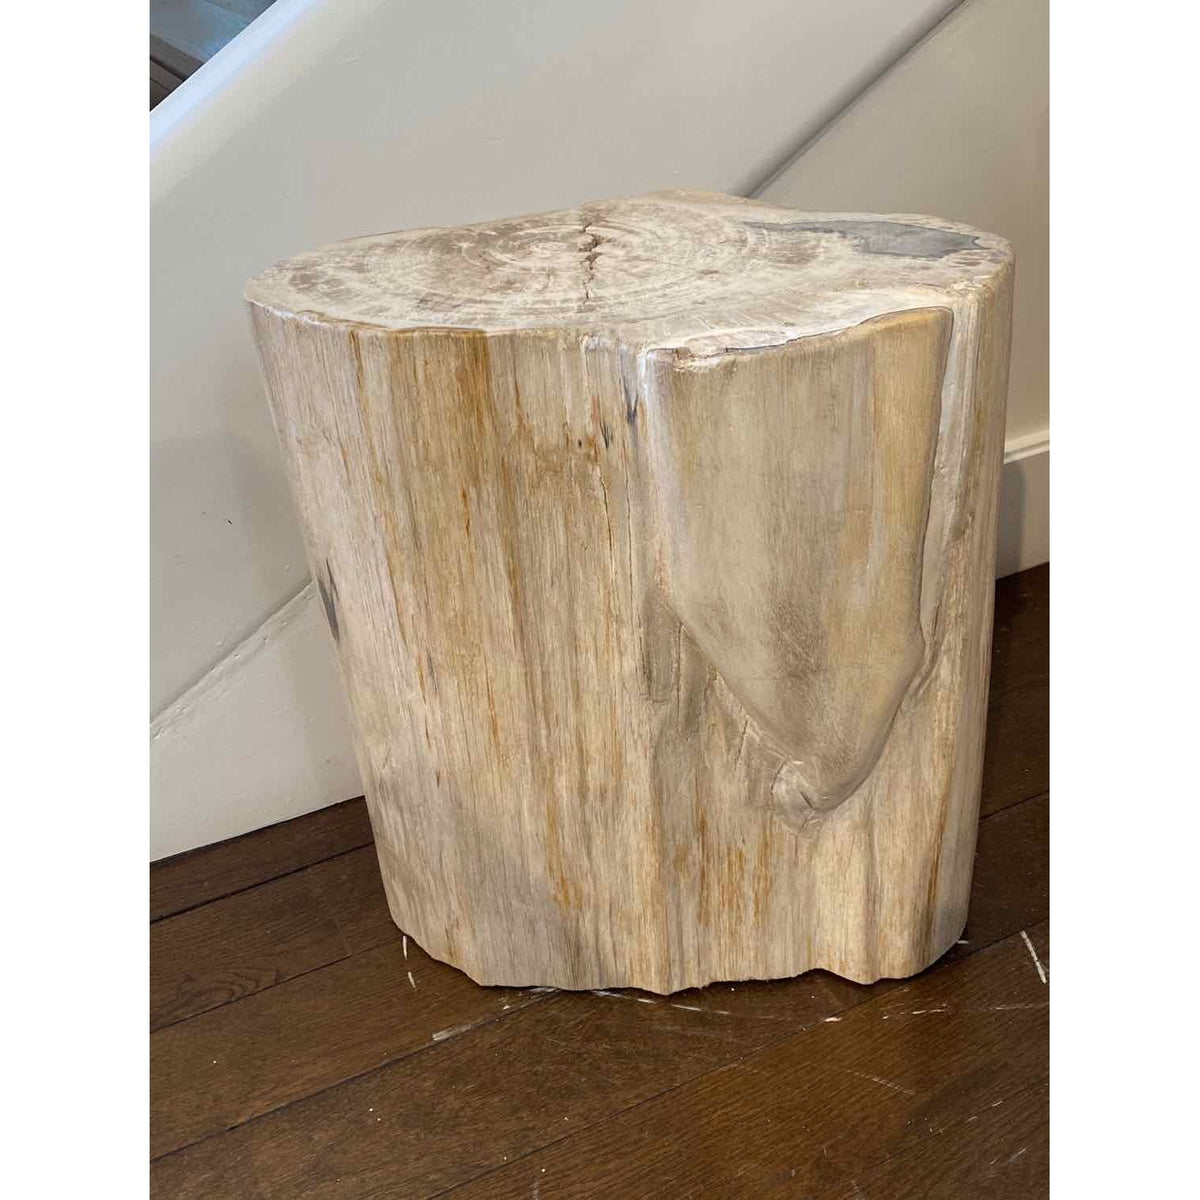 Petrified Wood Stump 18"Hx16"D